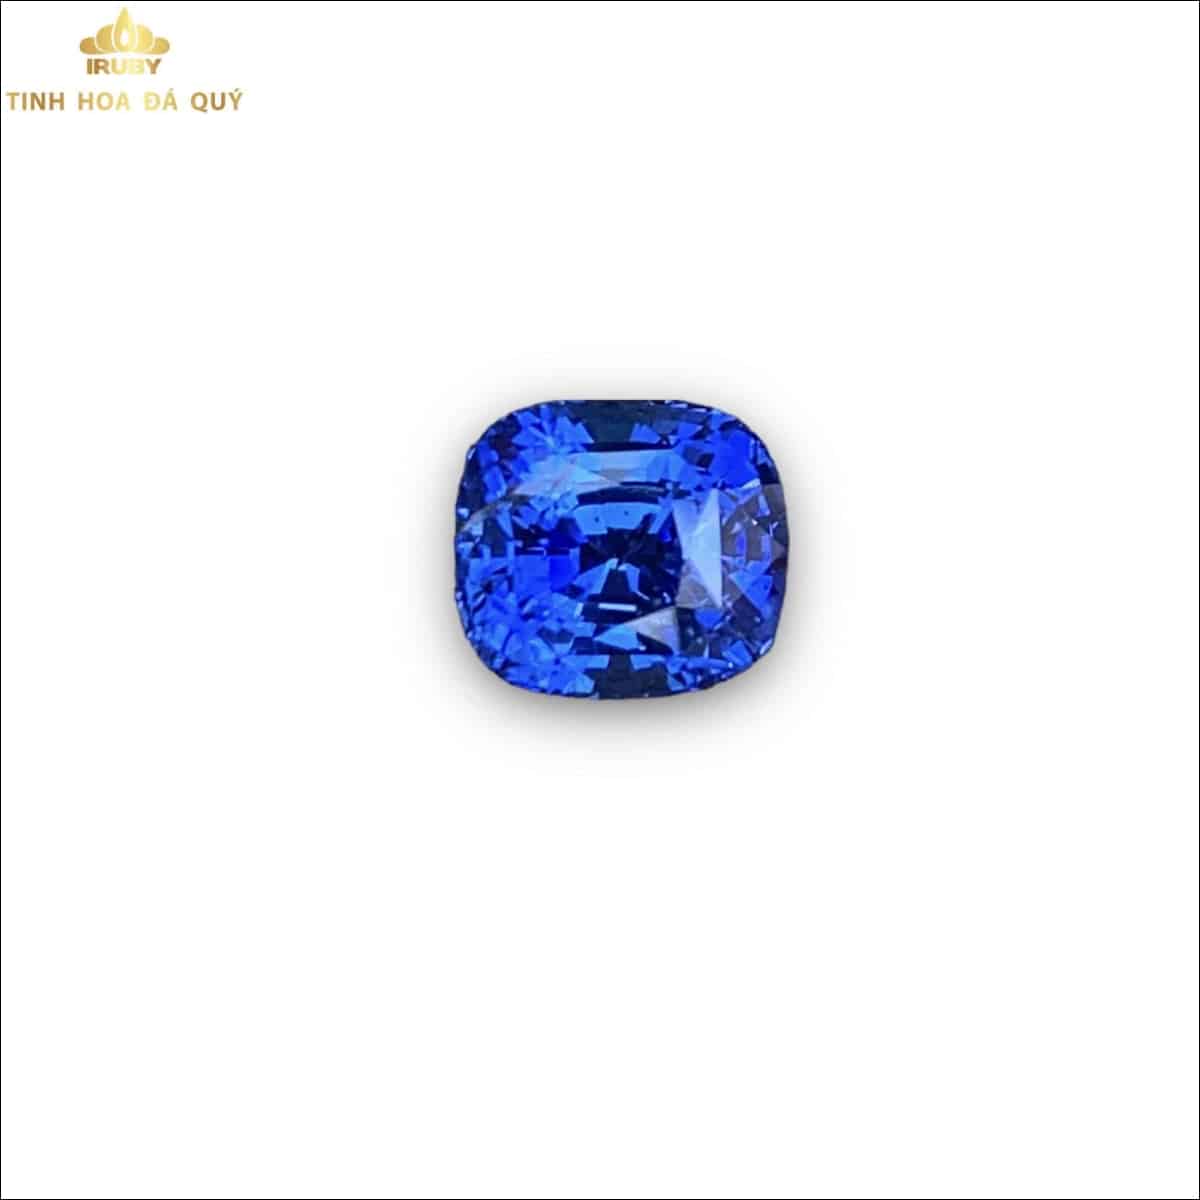 Viên Sapphire xanh lam sáng Cornflower 3,05ct - IRS 2212305